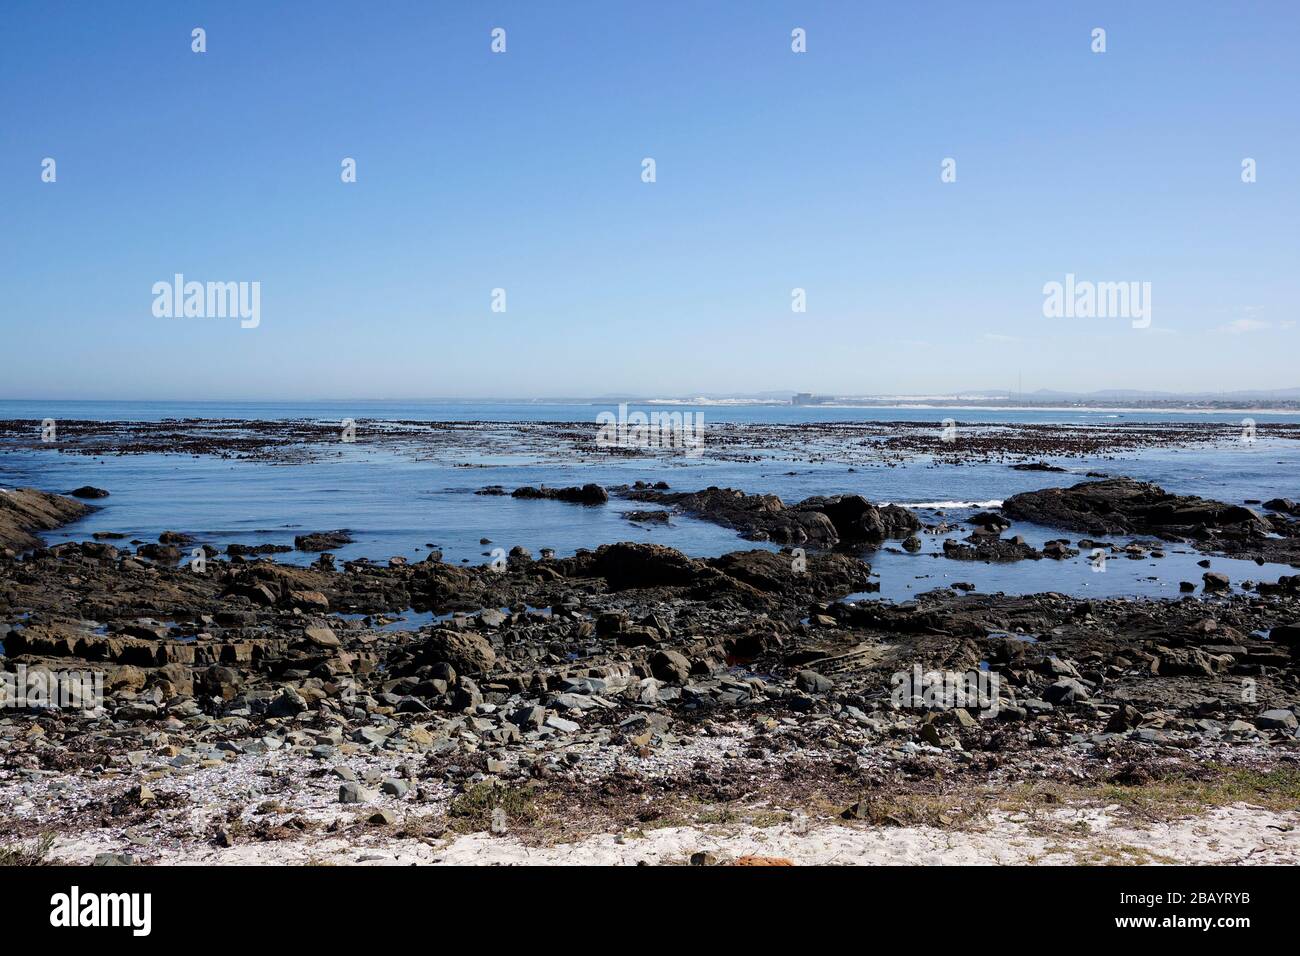 La plage de Melkbosstrand, près de Cape Town, avec la centrale nucléaire de Koeberg en arrière-plan. Banque D'Images